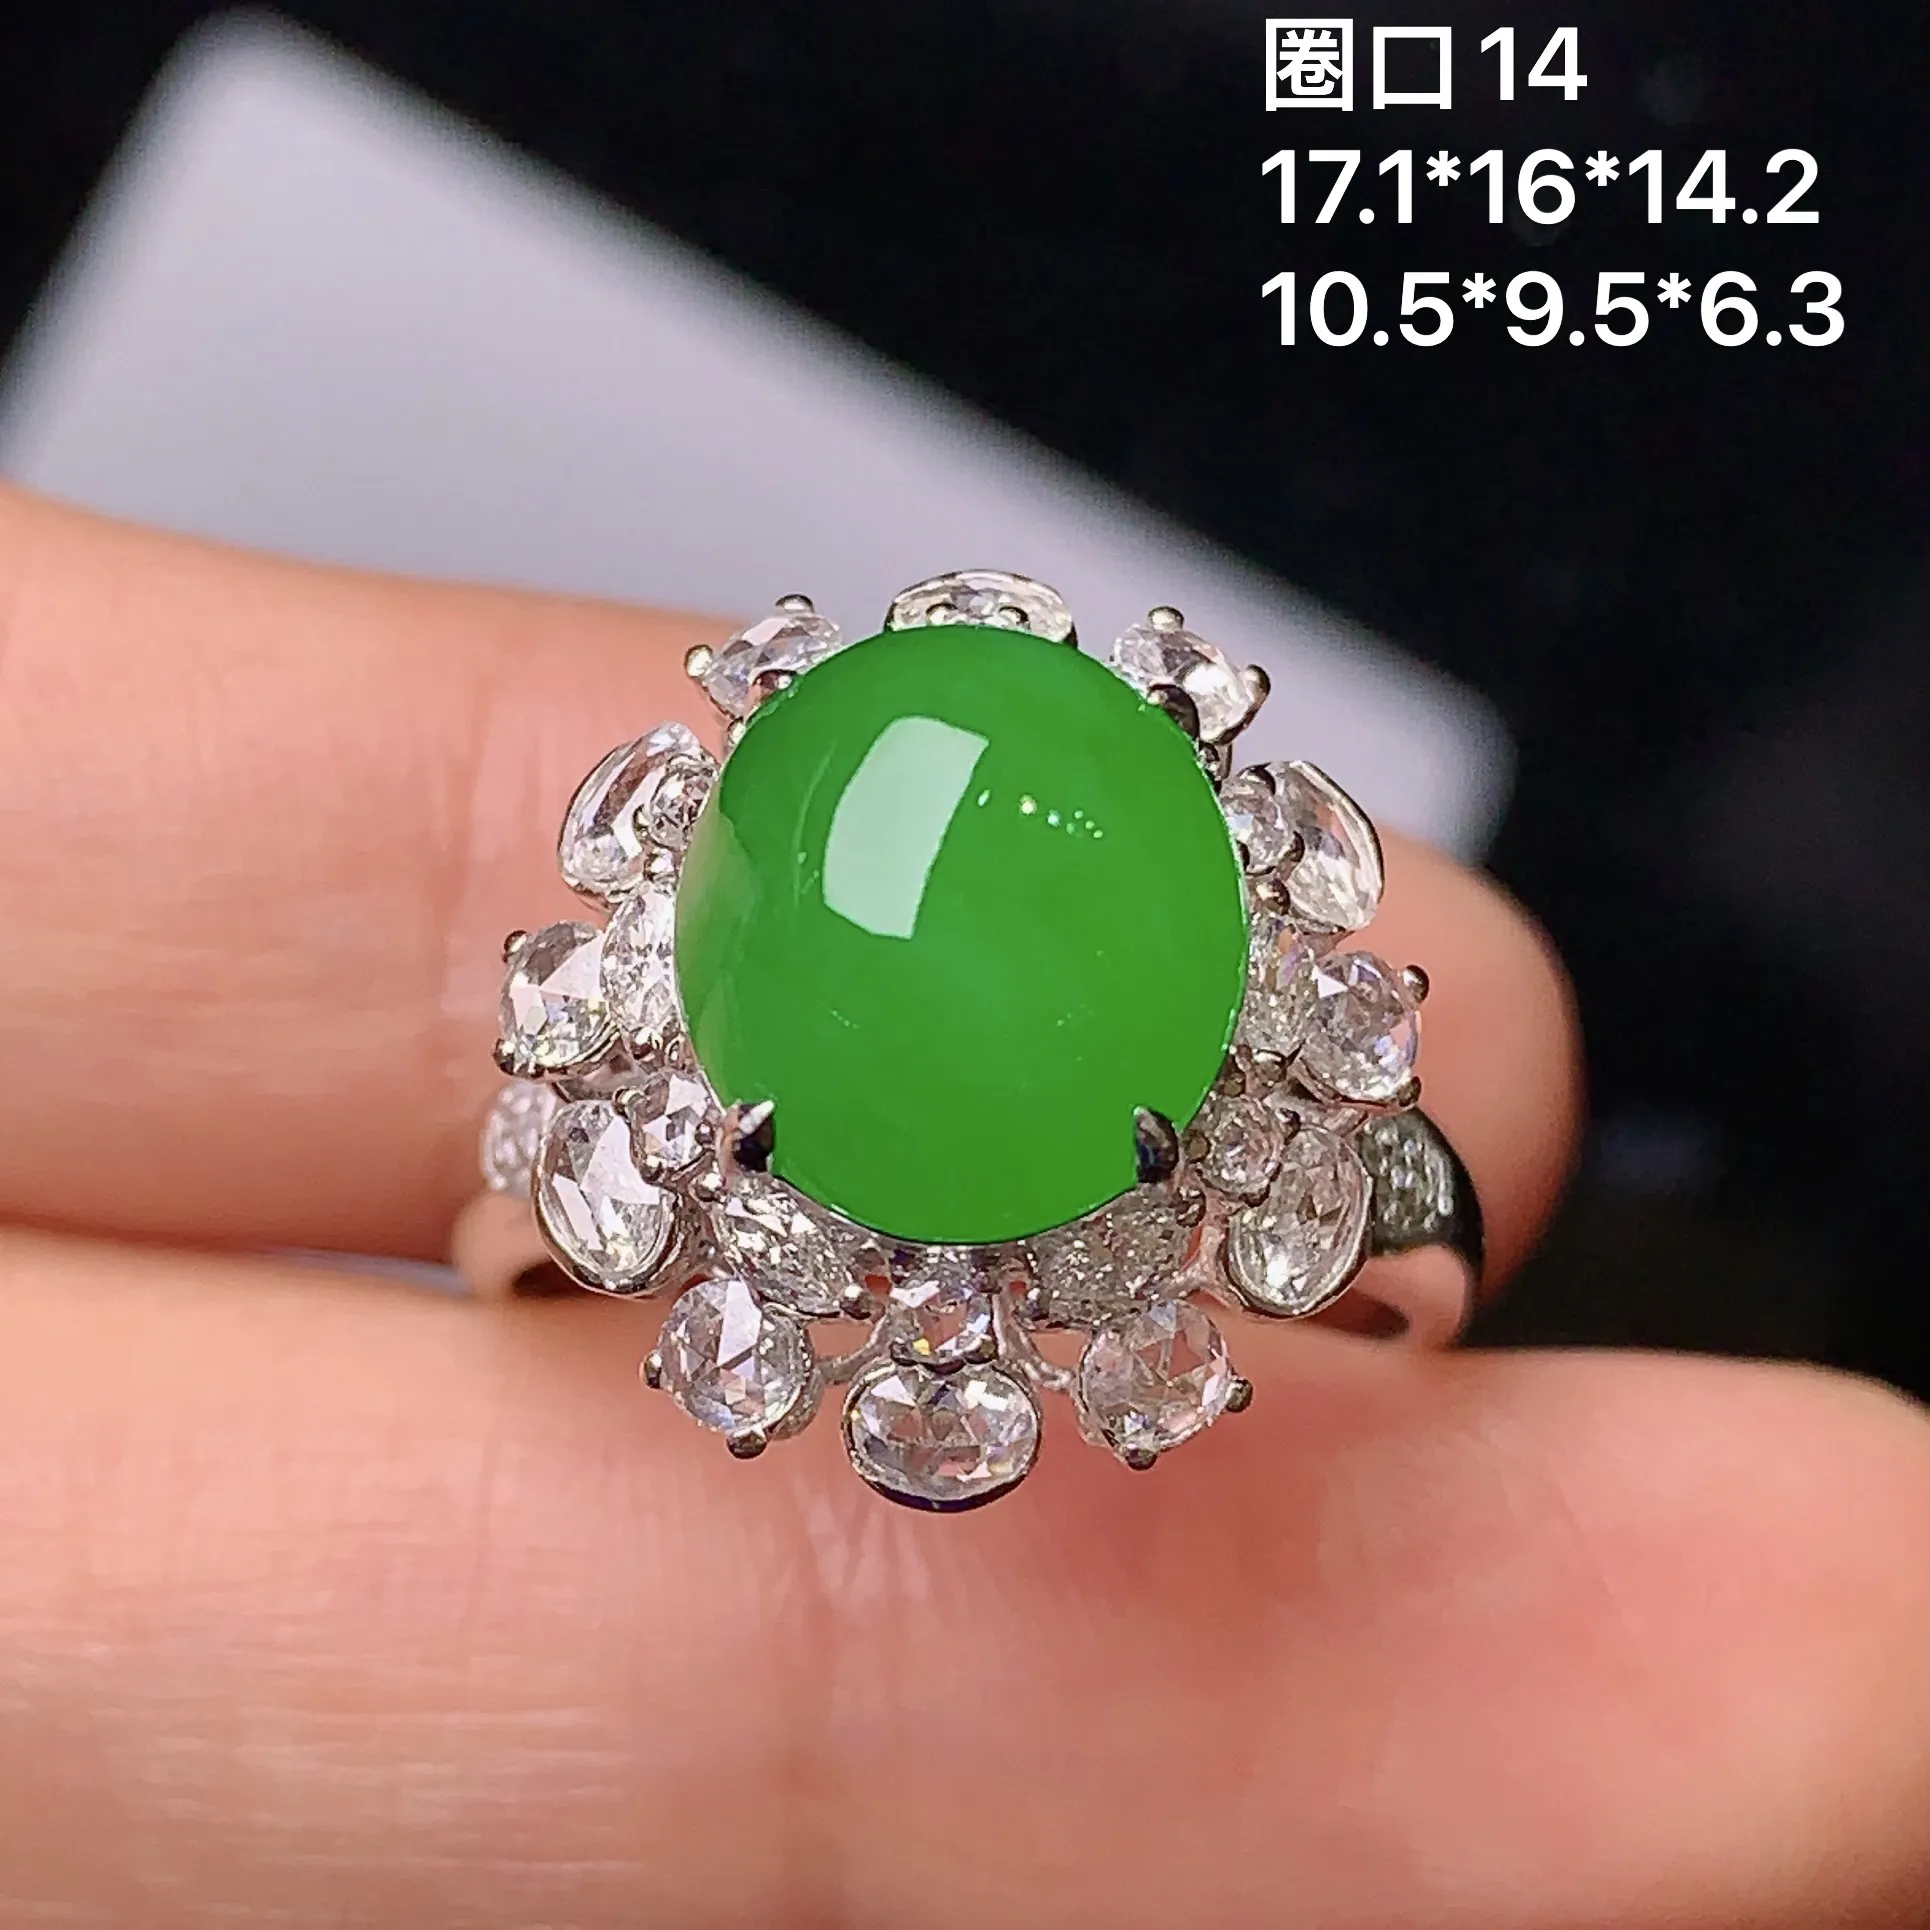 18k金钻镶嵌满绿蛋面戒指 玉质细腻 色泽艳丽 款式新颖别致 圈口14 整体尺寸17.1*16*14.2